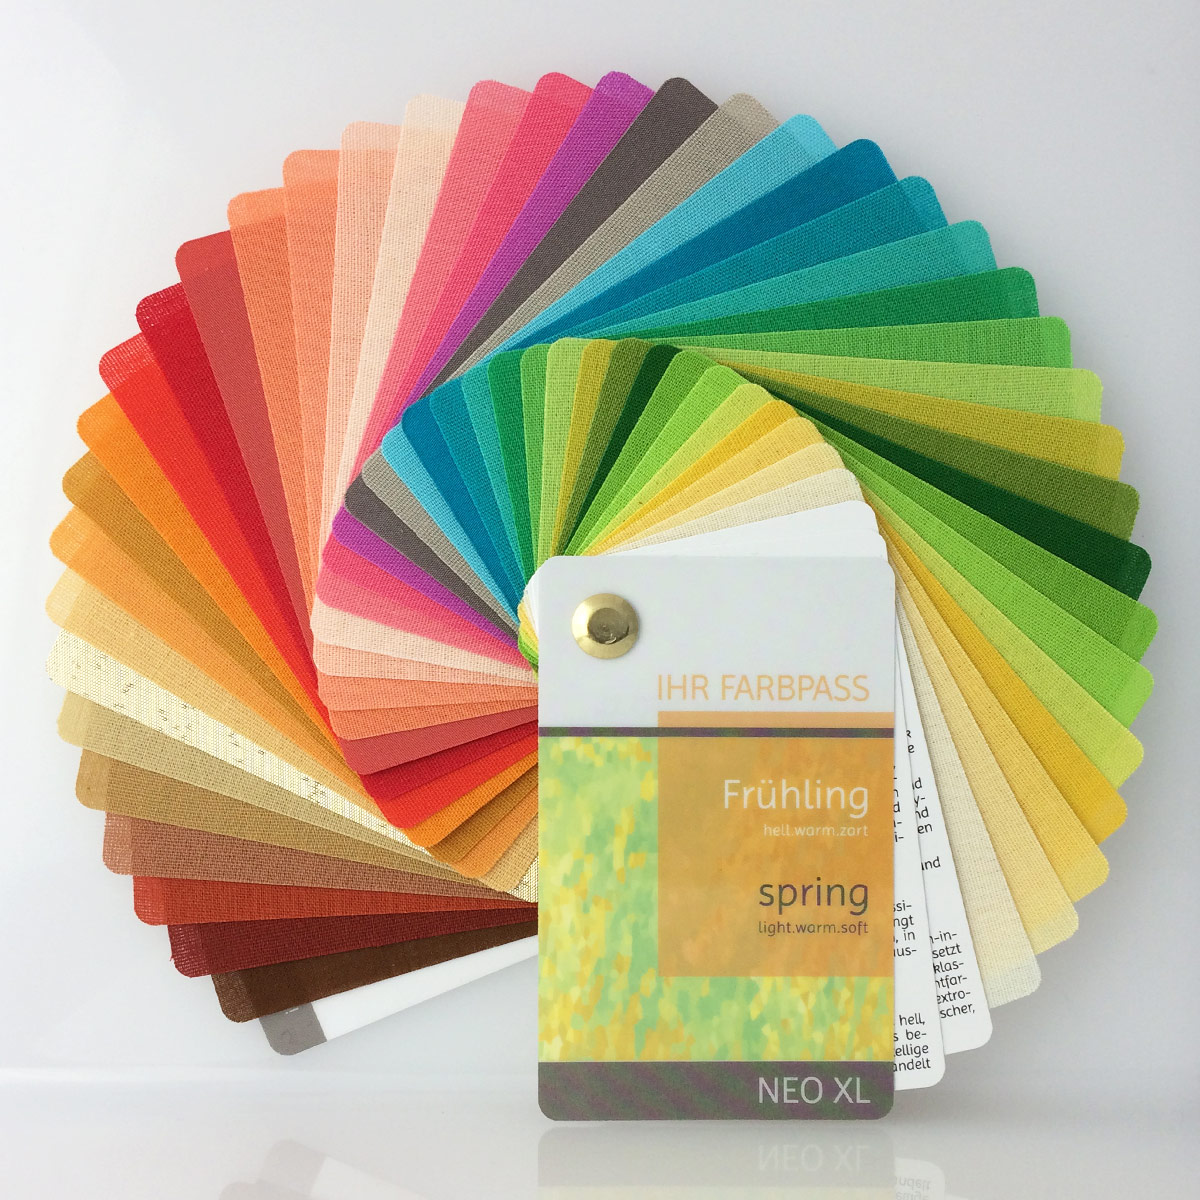 Farbpass Frühlingstyp zur Farbberatung, Vorderseite - Neo XL | Komood